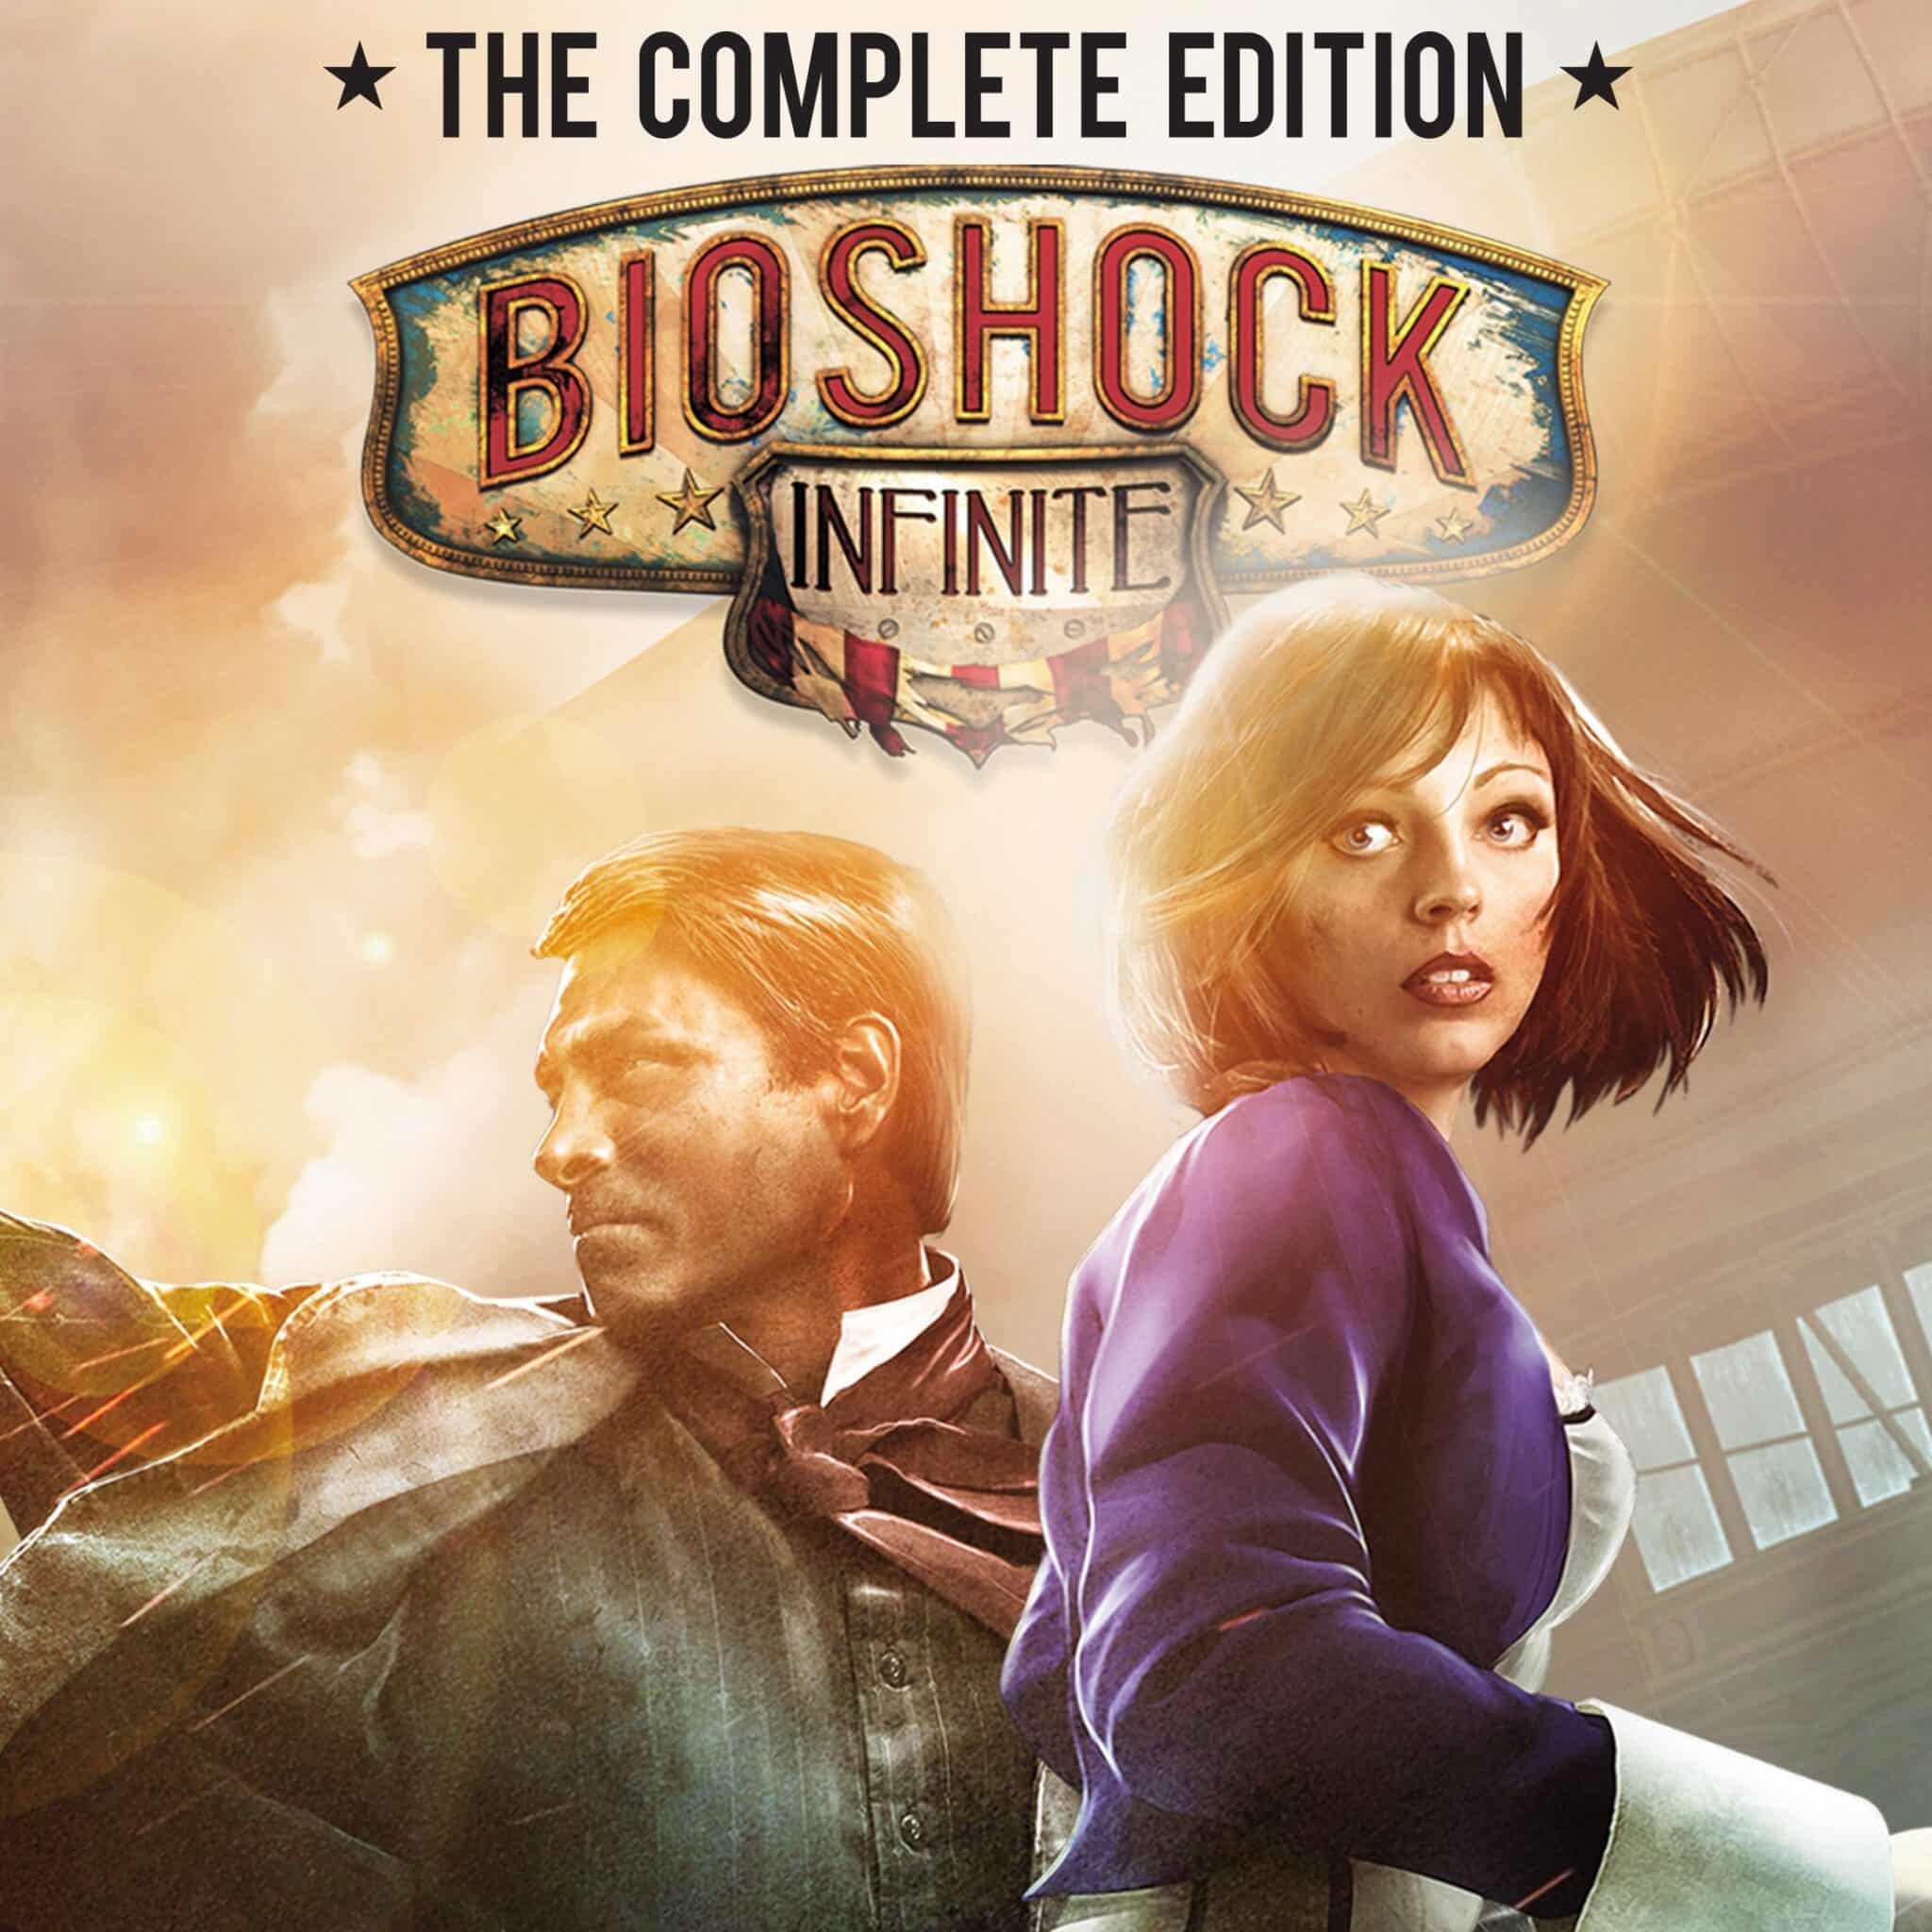 BioShock Infinite tem história profunda e bom tiroteio - 03/04